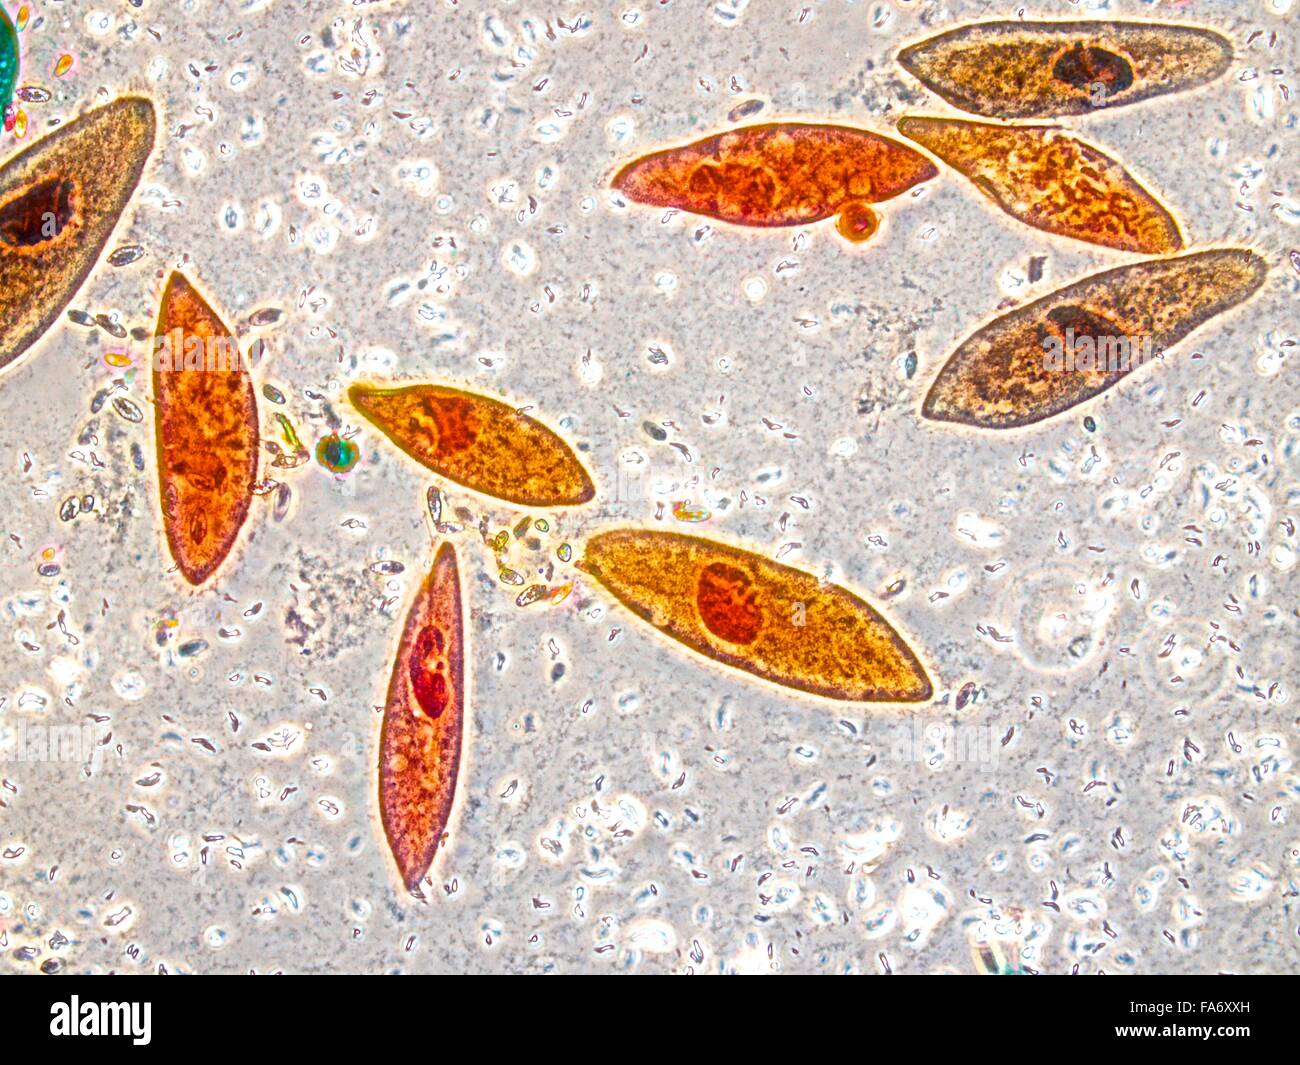 Schönheit der Biologie unter Mikroskopie Stockfoto